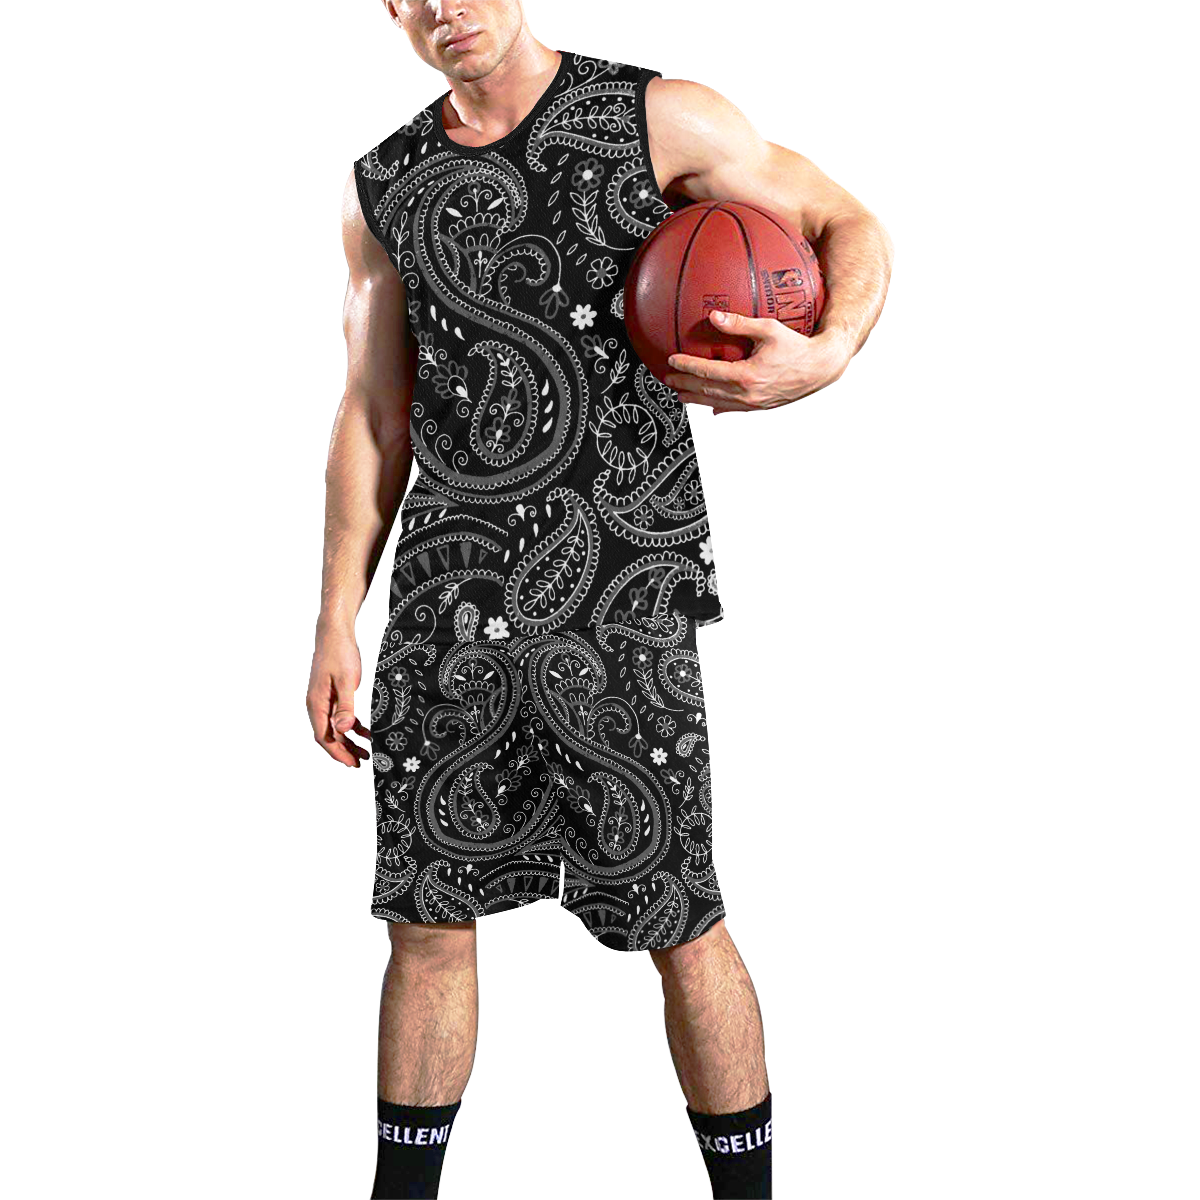 PAISLEY 7 All Over Print Basketball Uniform